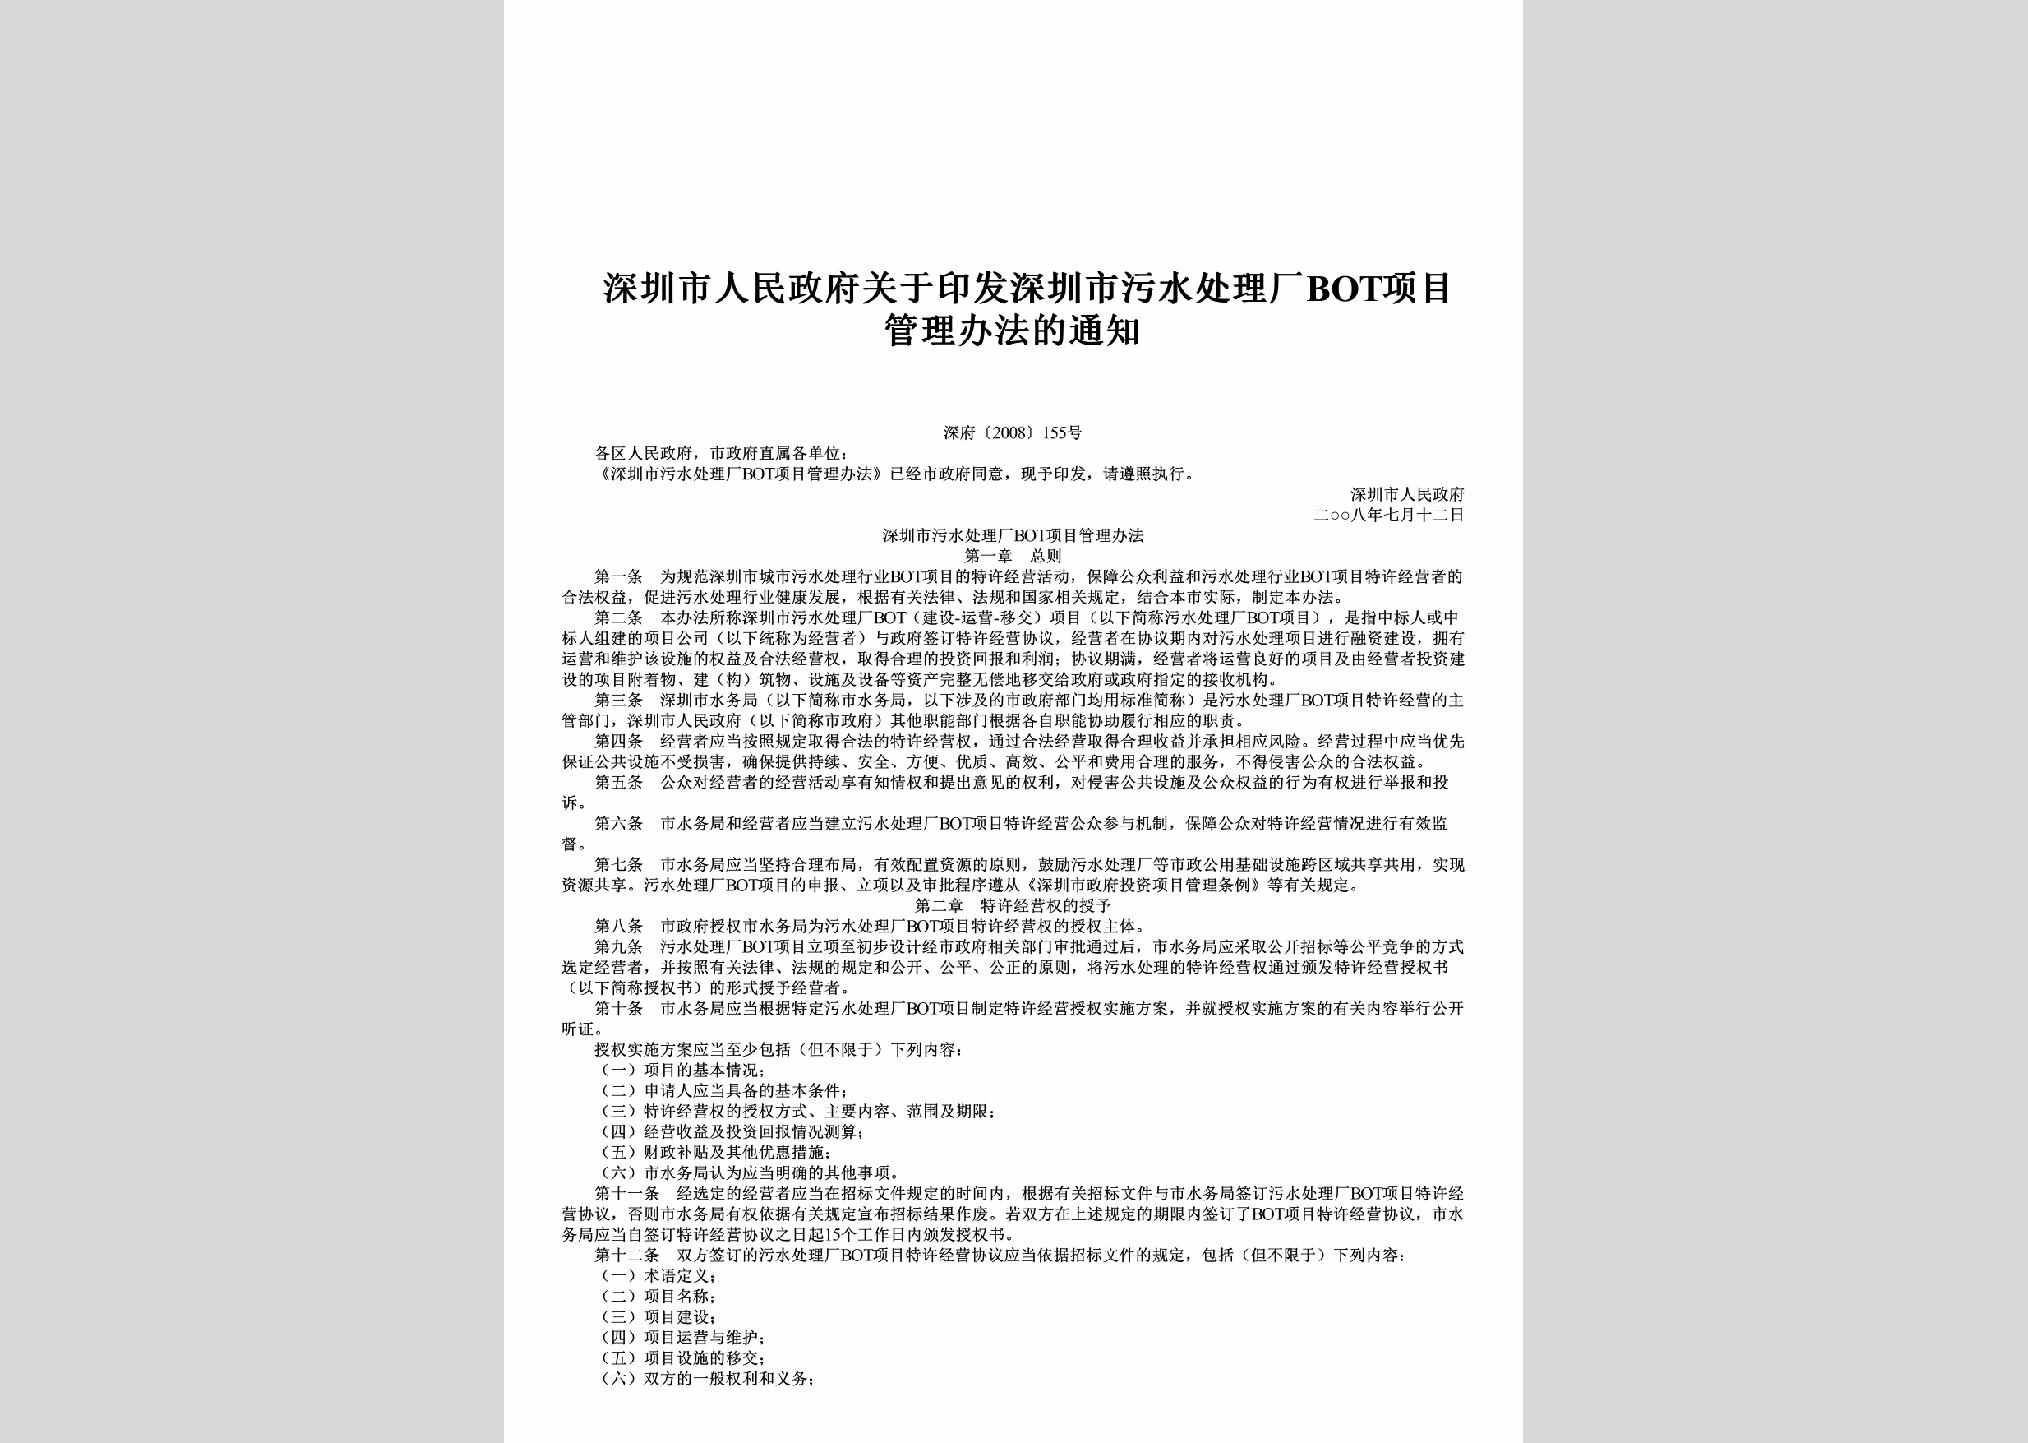 深府[2008]155号：关于印发深圳市污水处理厂BOT项目管理办法的通知